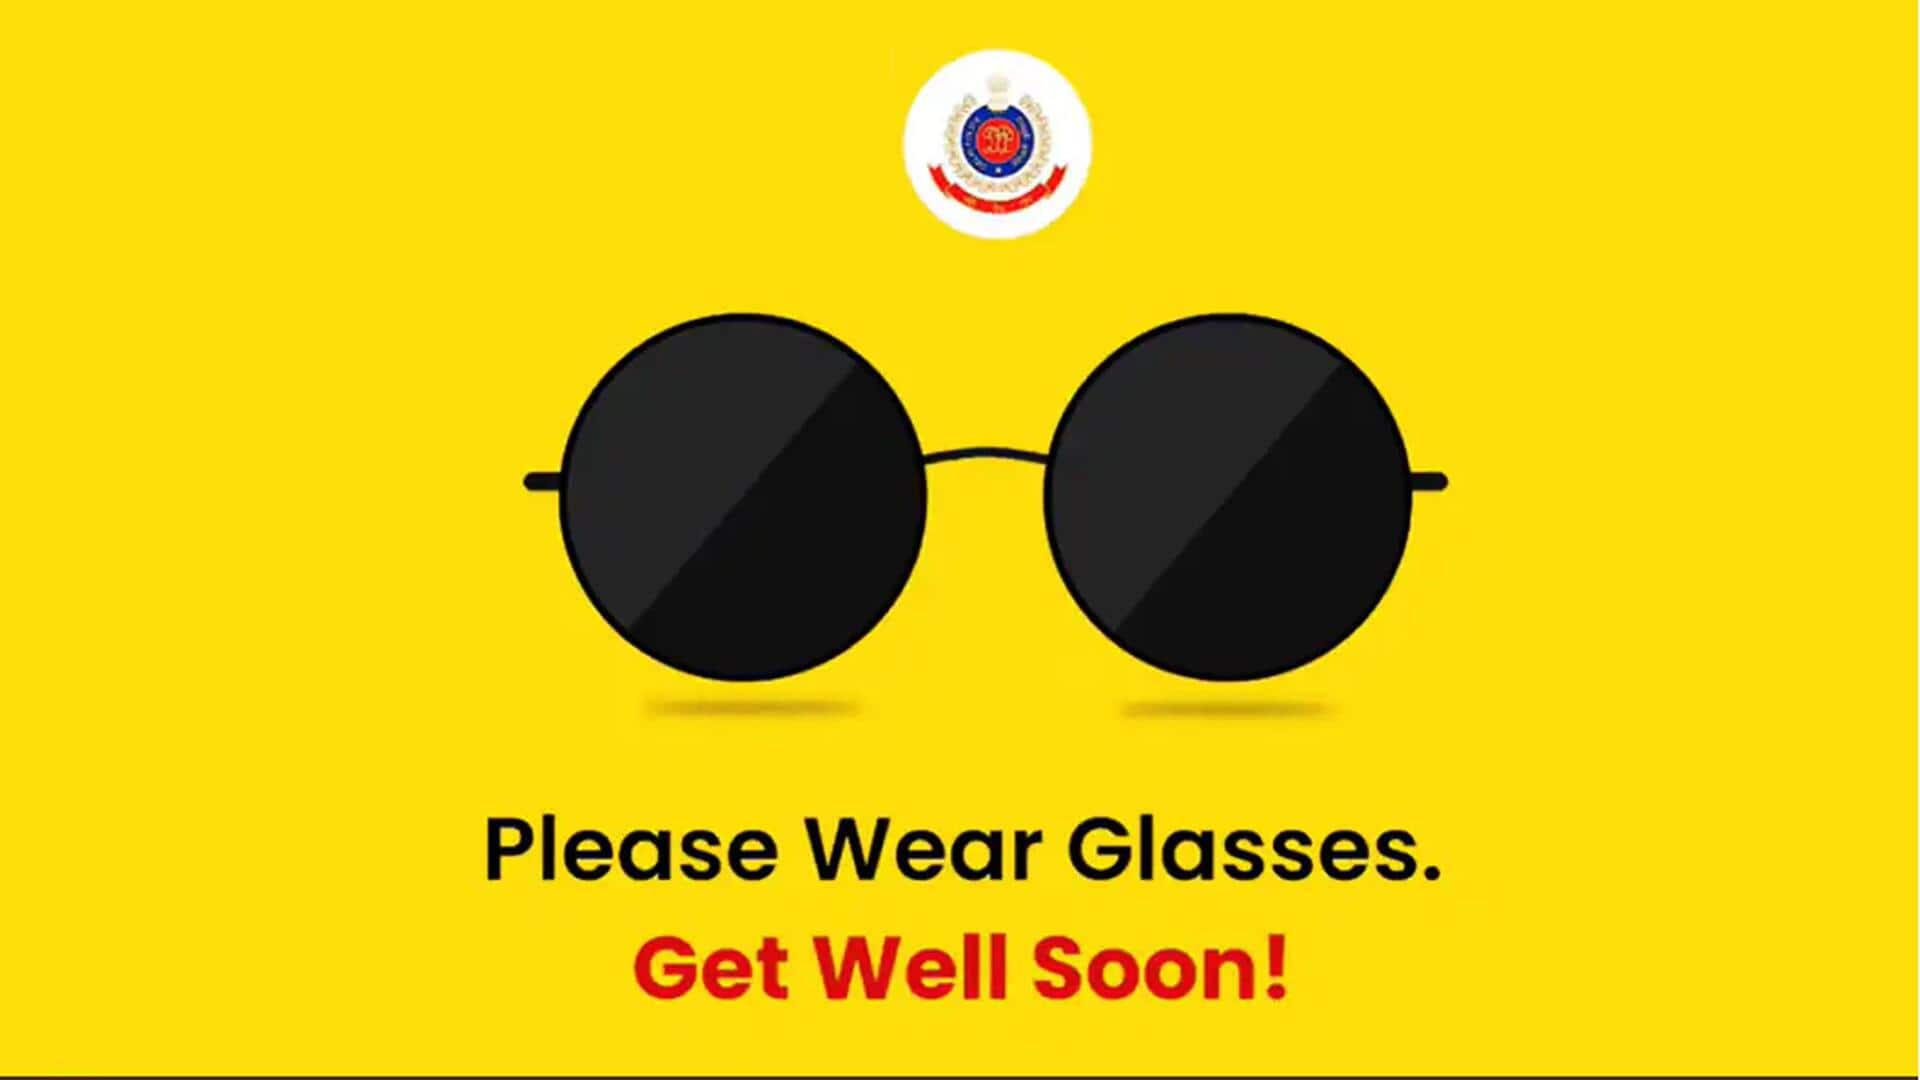 दिल्ली पुलिस ने 'काला चश्मा' गाने के जरिए दी आई फ्लू पर सलाह, देखिए वीडियो